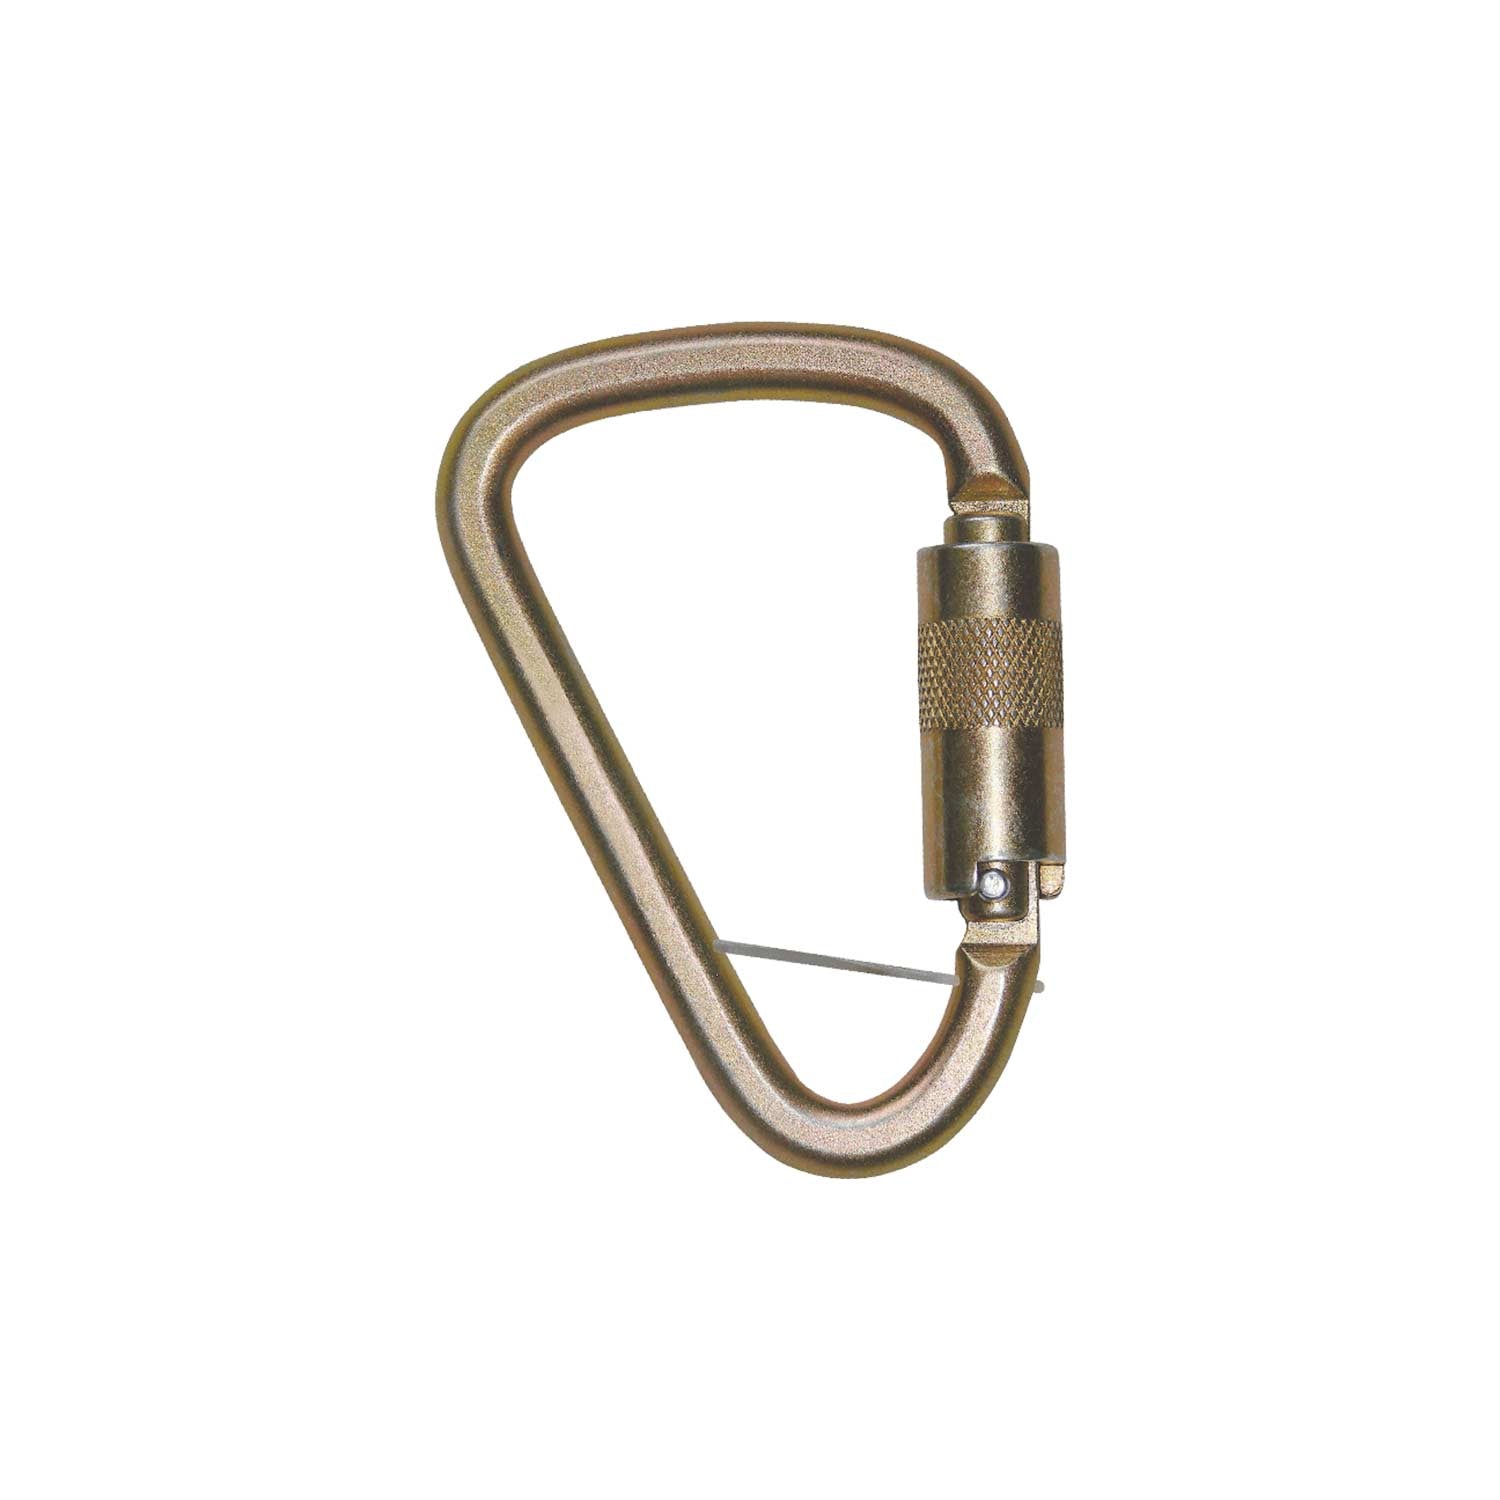 50 ft Rope/ Aluminum O-Ring/ Locking Carabiner Climbing Kit